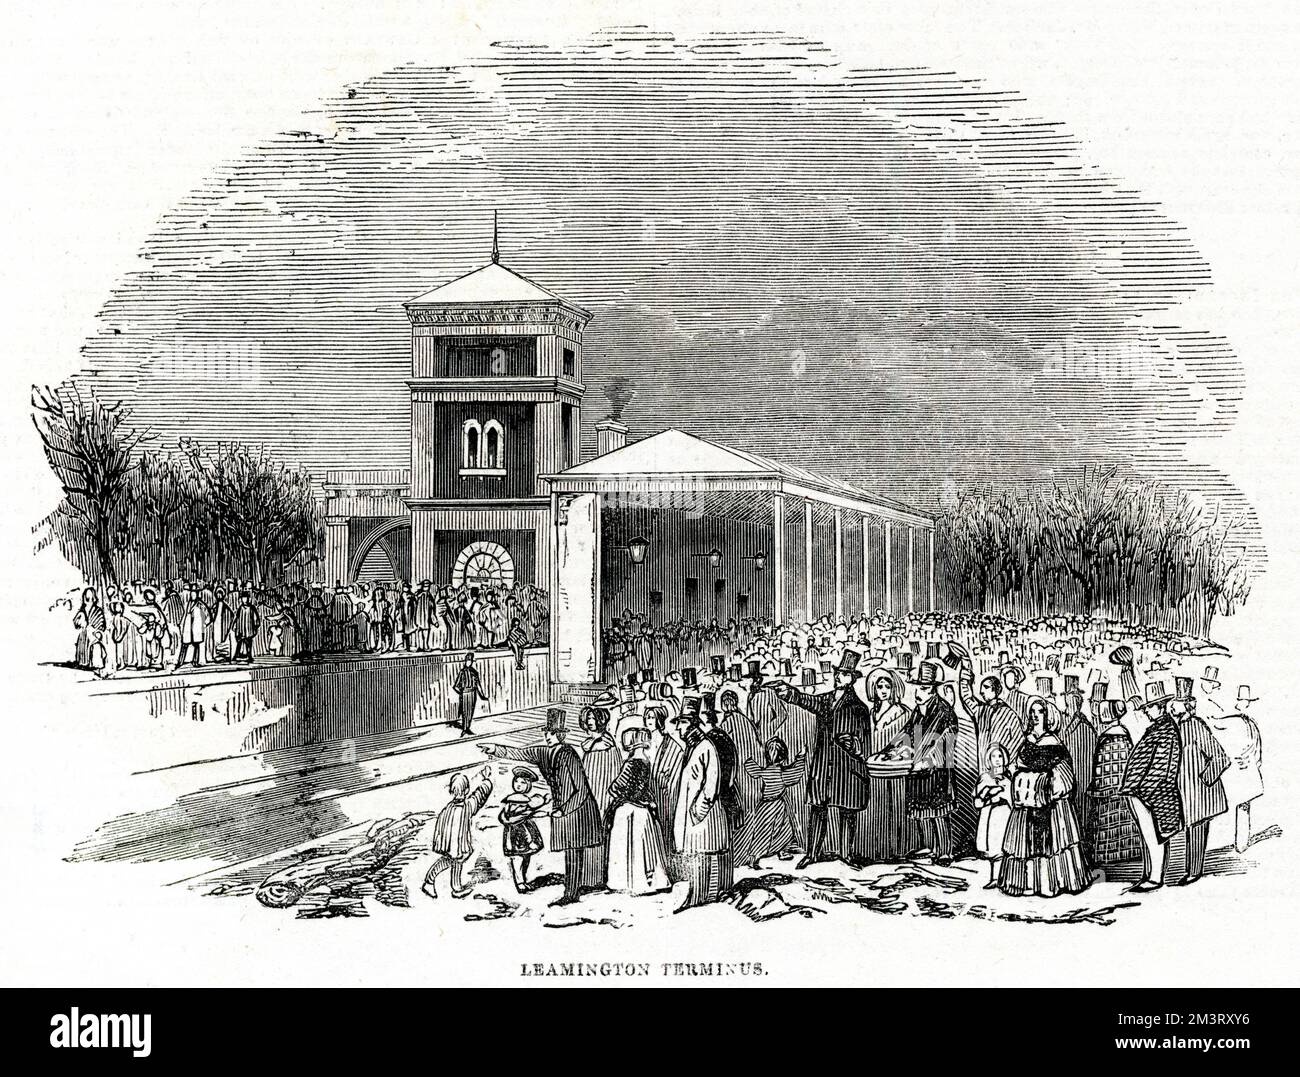 Stazione ferroviaria di Leamington (Spa), Warwickshire, con un gran numero di persone presenti, probabilmente intorno al momento dell'apertura della stazione. Data: 1844 Foto Stock